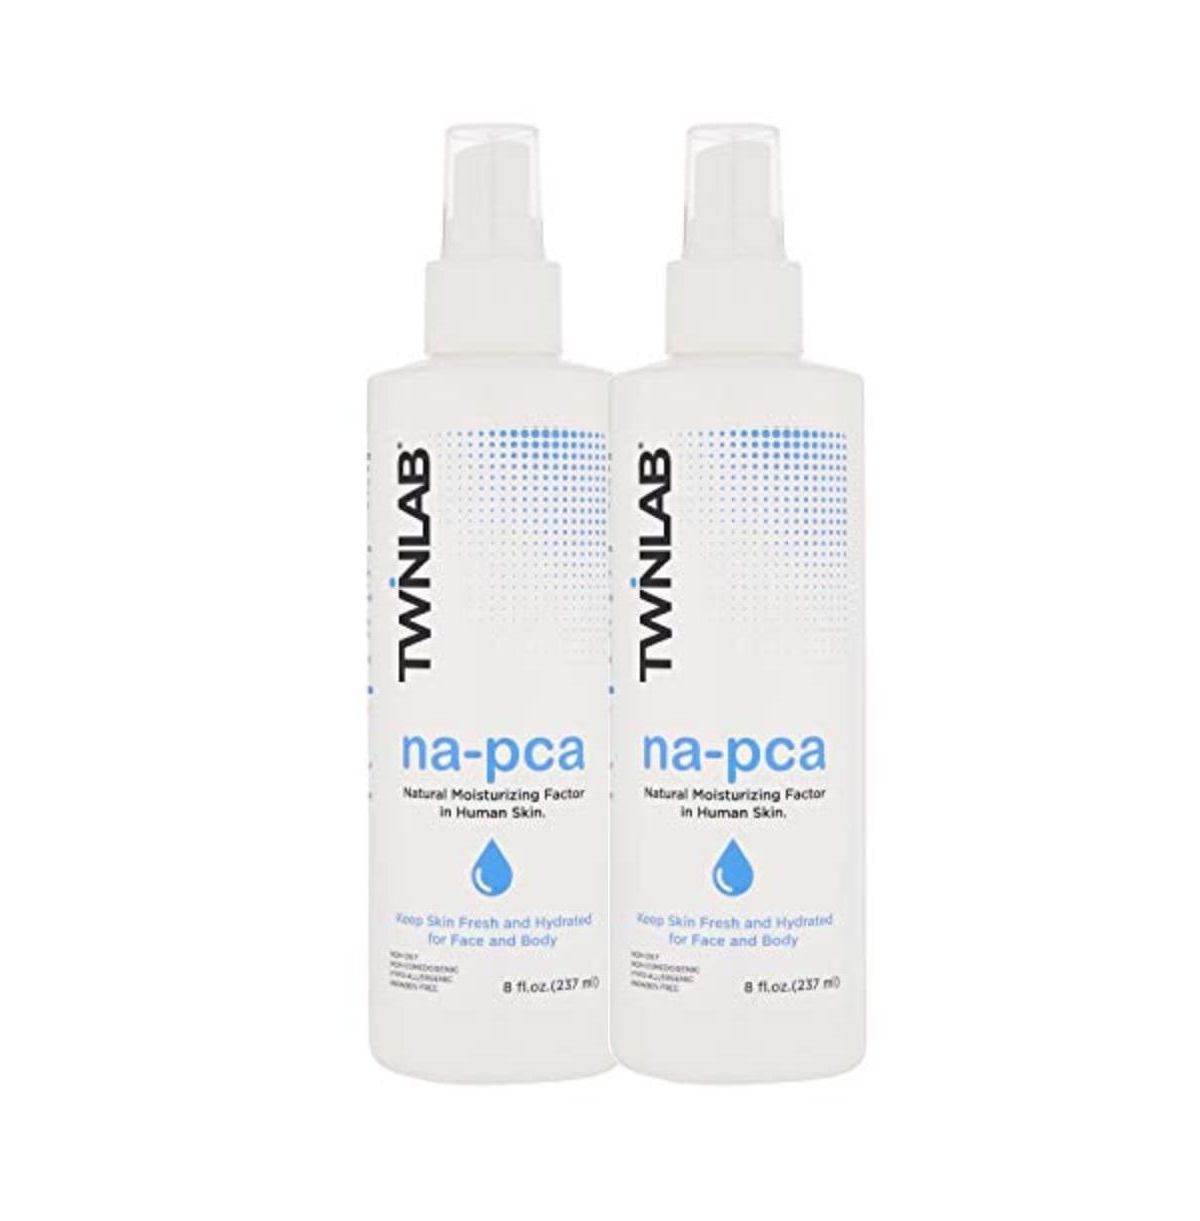 Na-Pca Spray - Eucalyptus Oil Body Mist for Women & Men to Support Skin Hydration - 8 fl oz (Pack of 2) - White